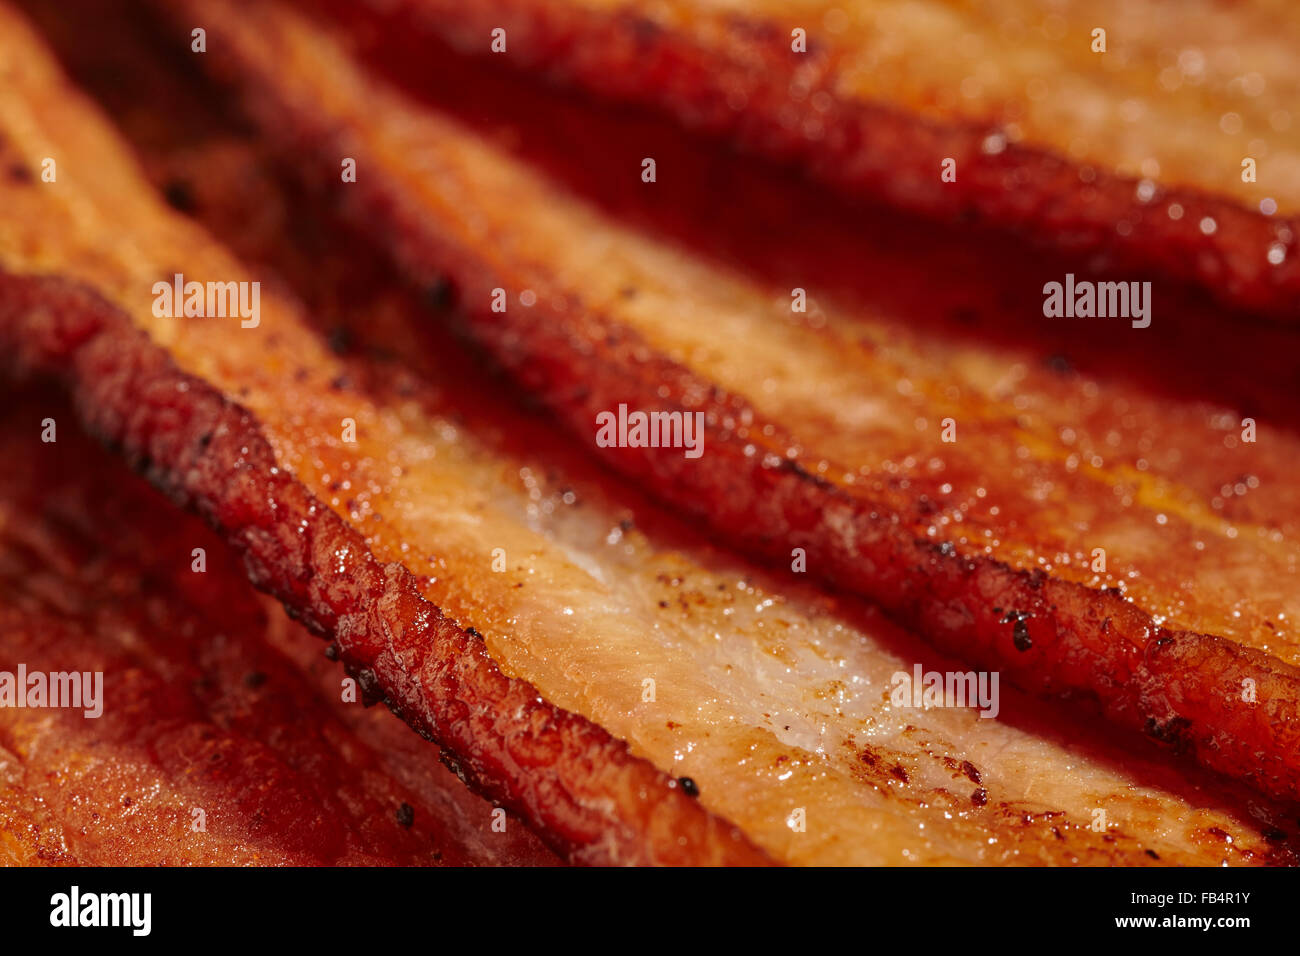 Completamente cocido rodajas de tocino estilo americano, llamado "treaky bacon" en el REINO UNIDO Foto de stock